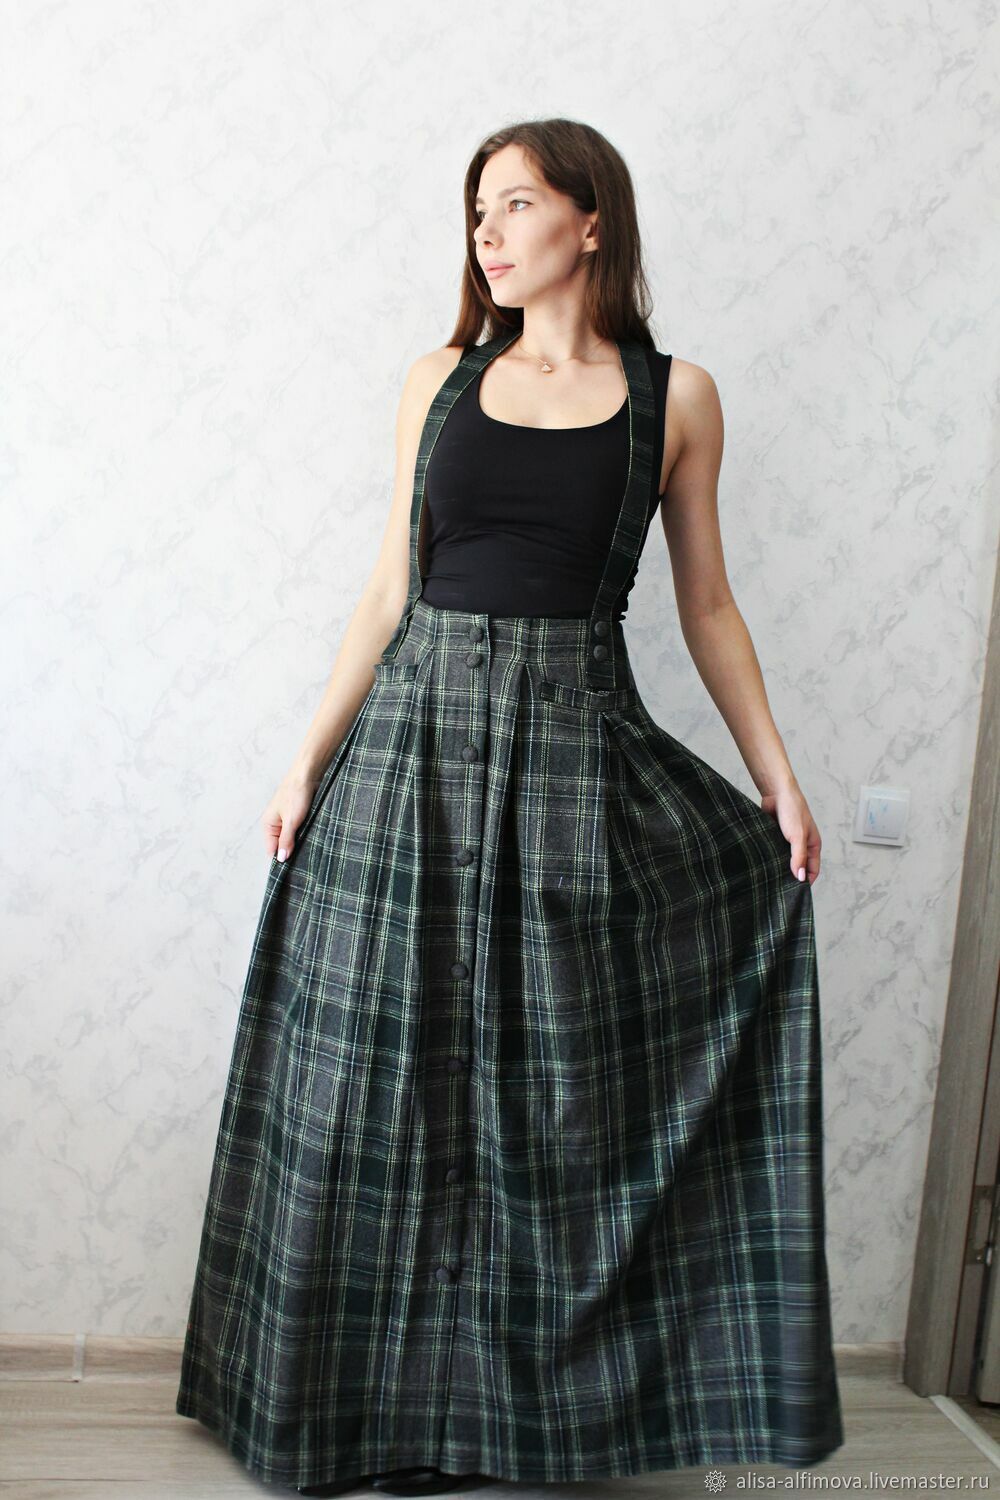 Warm skirt 'Milan', Skirts, Tashkent,  Фото №1